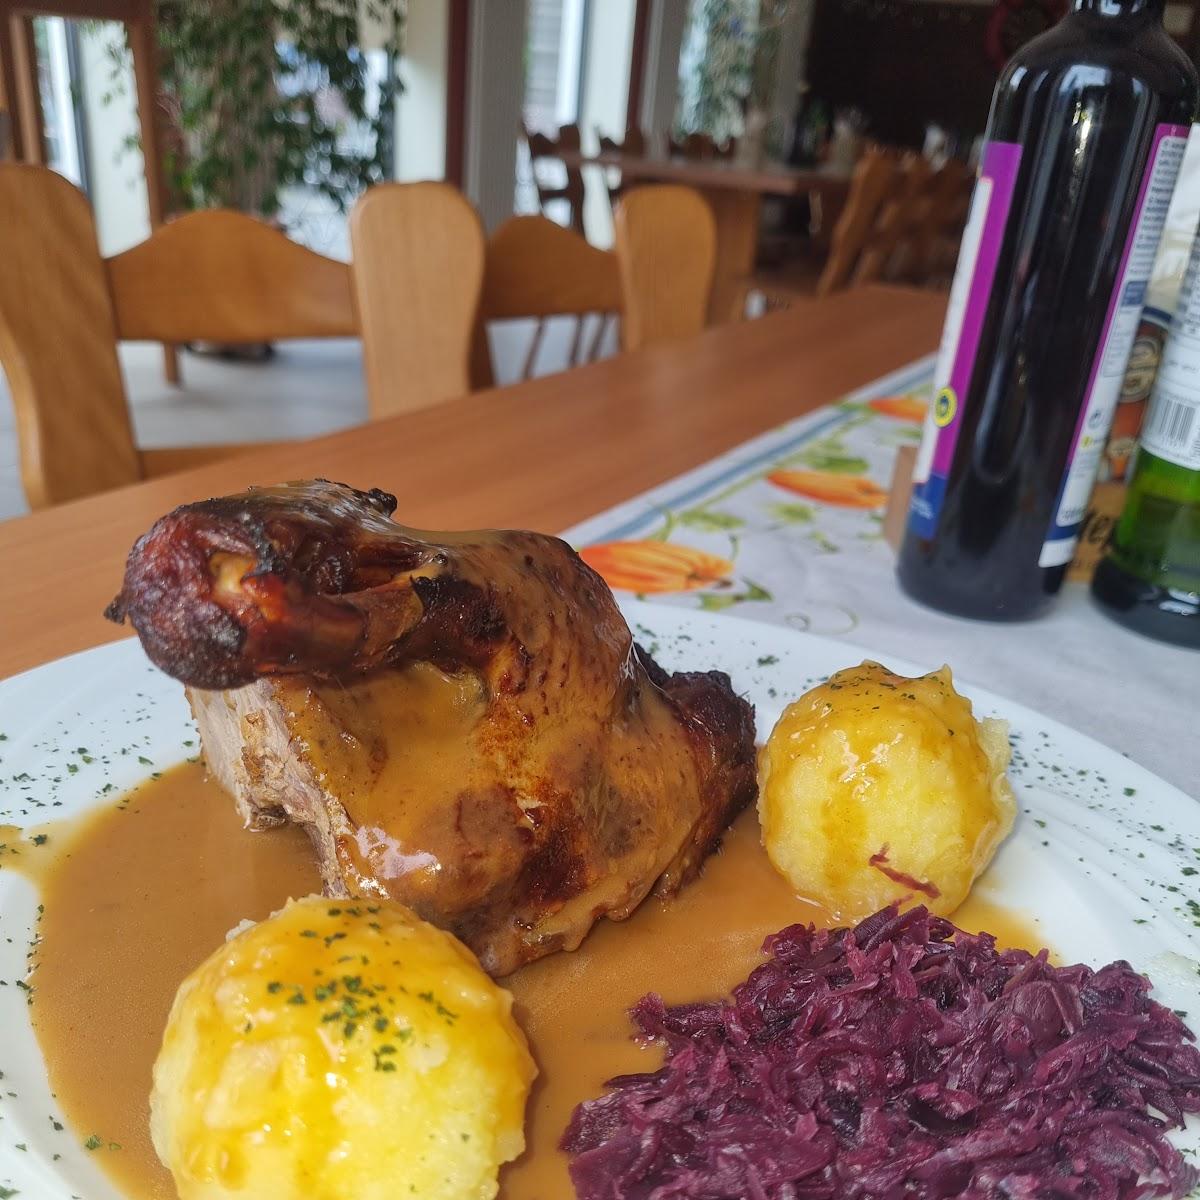 Restaurant "Vereinsgaststätte  Jadaway " in Eichenau